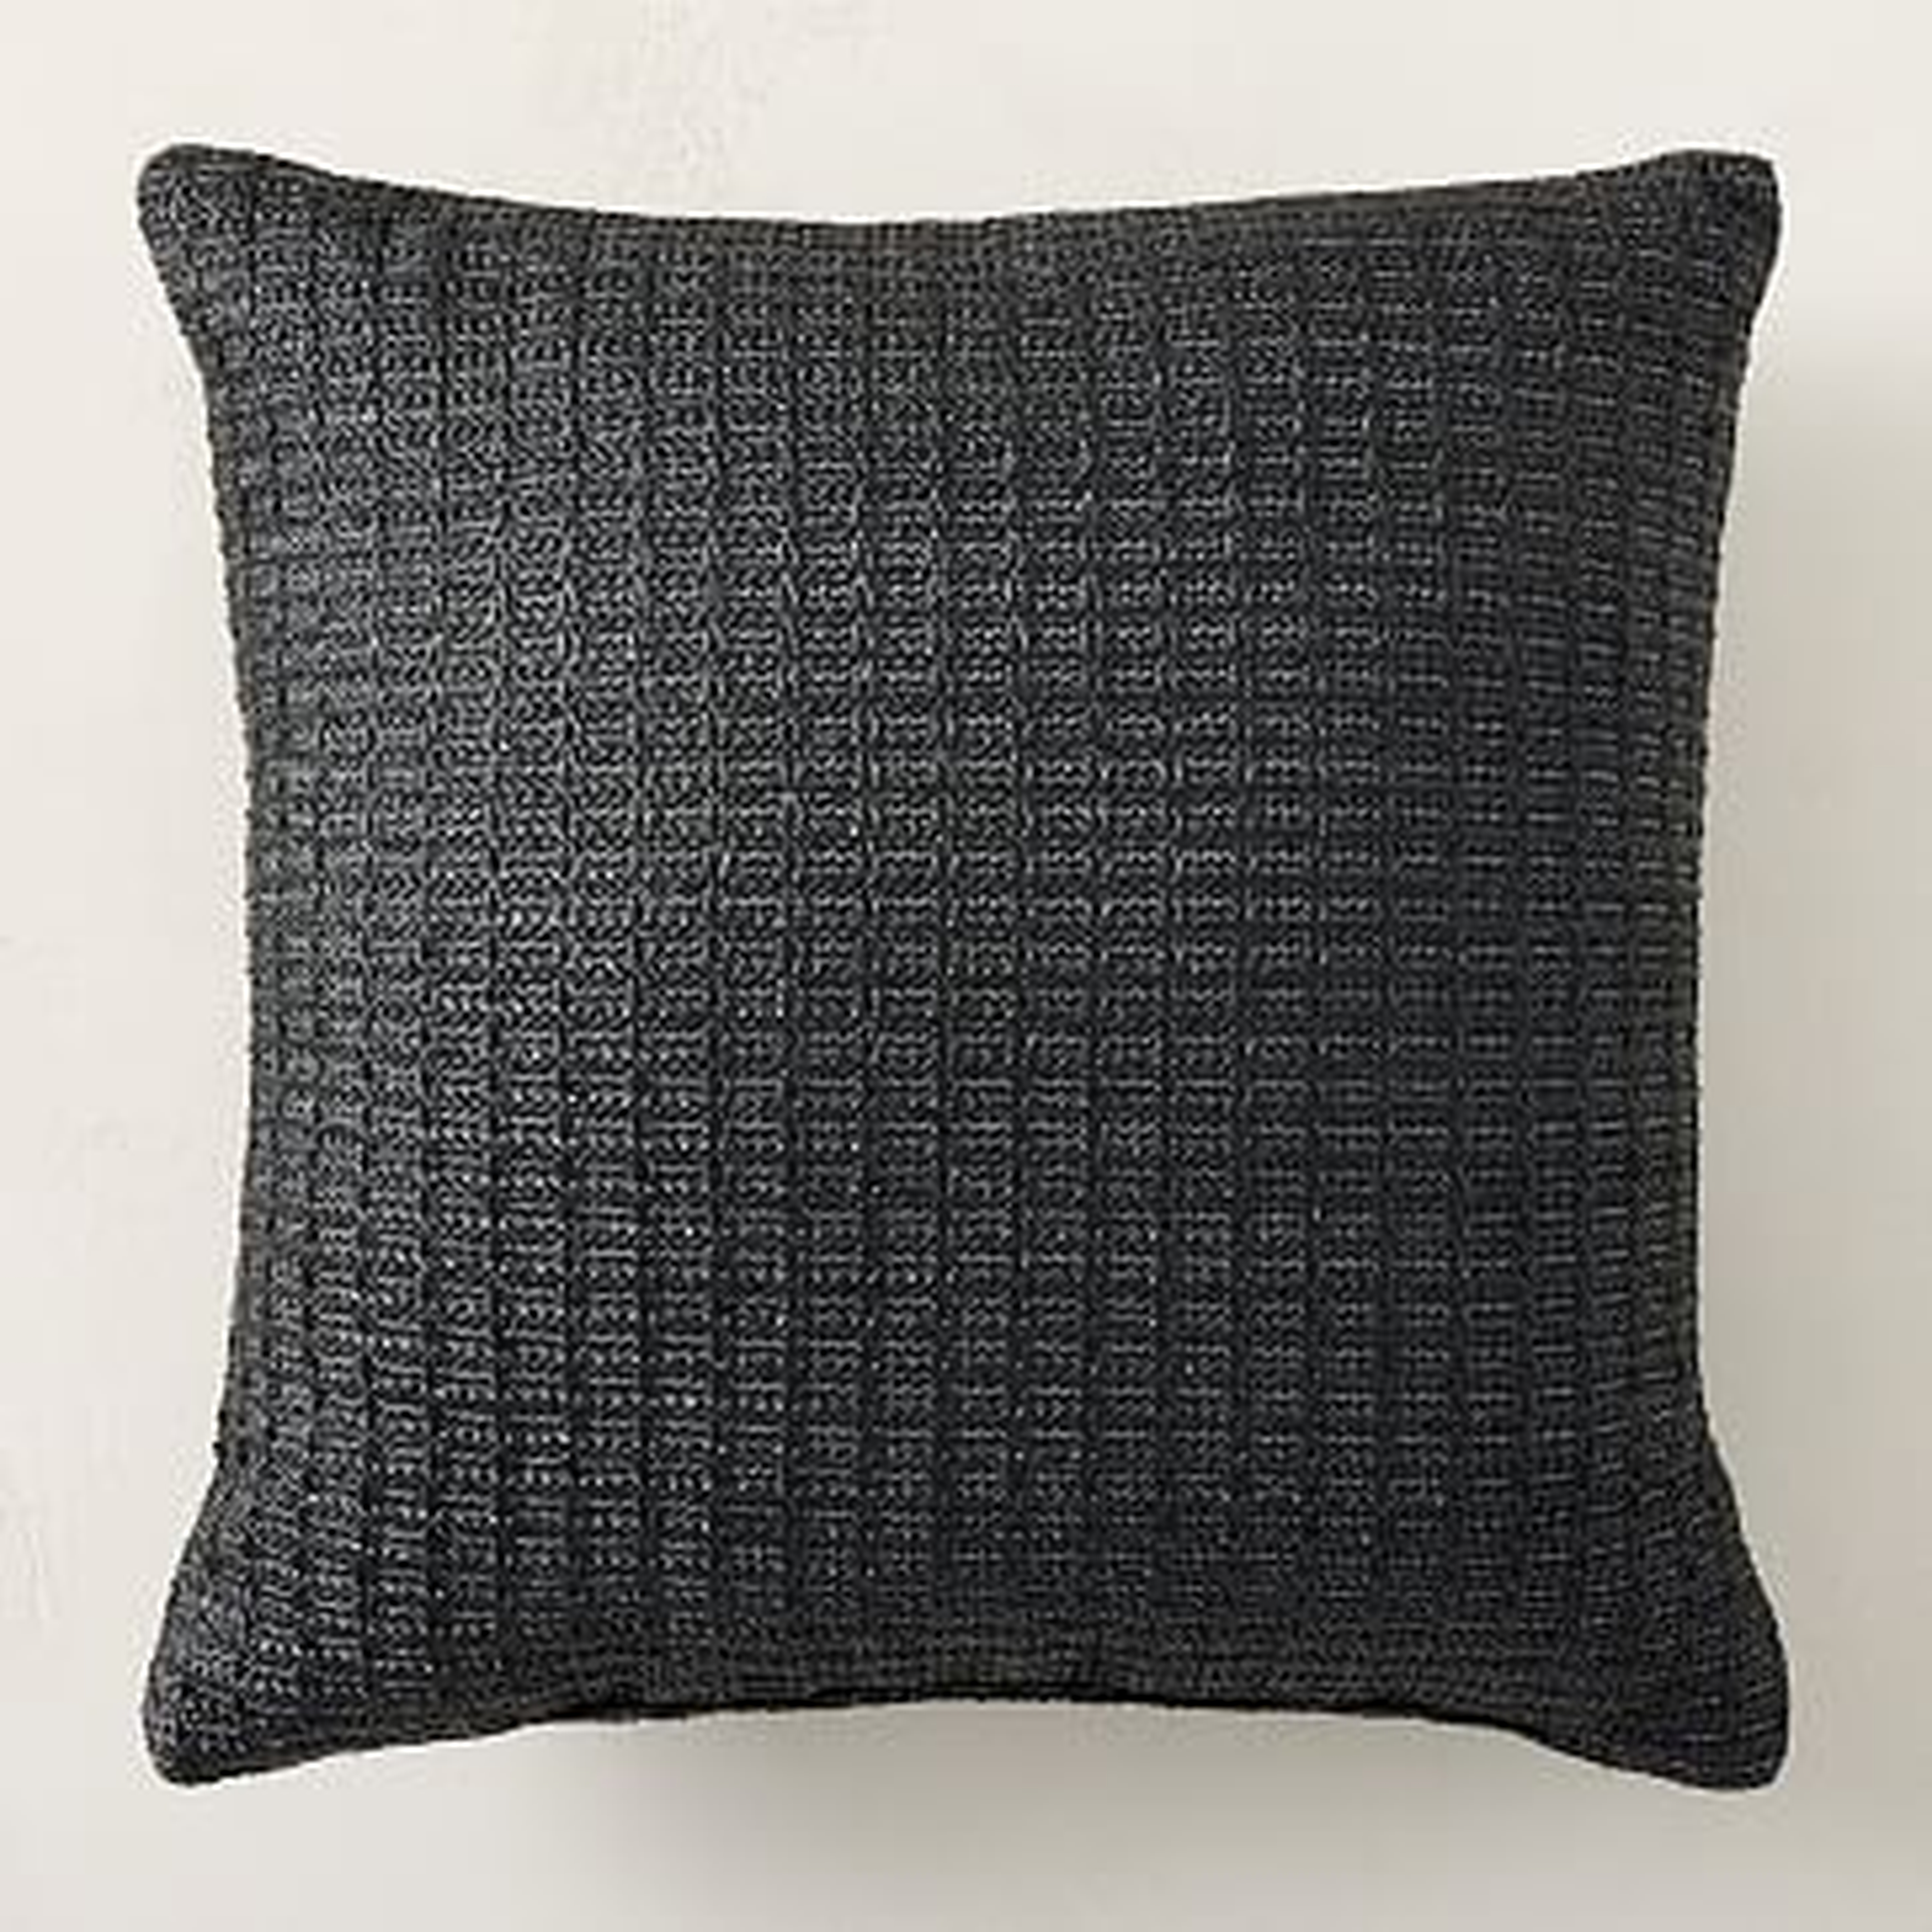 Faux Jute Indoor/Outdoor Pillow, Black, 20"x20" - West Elm